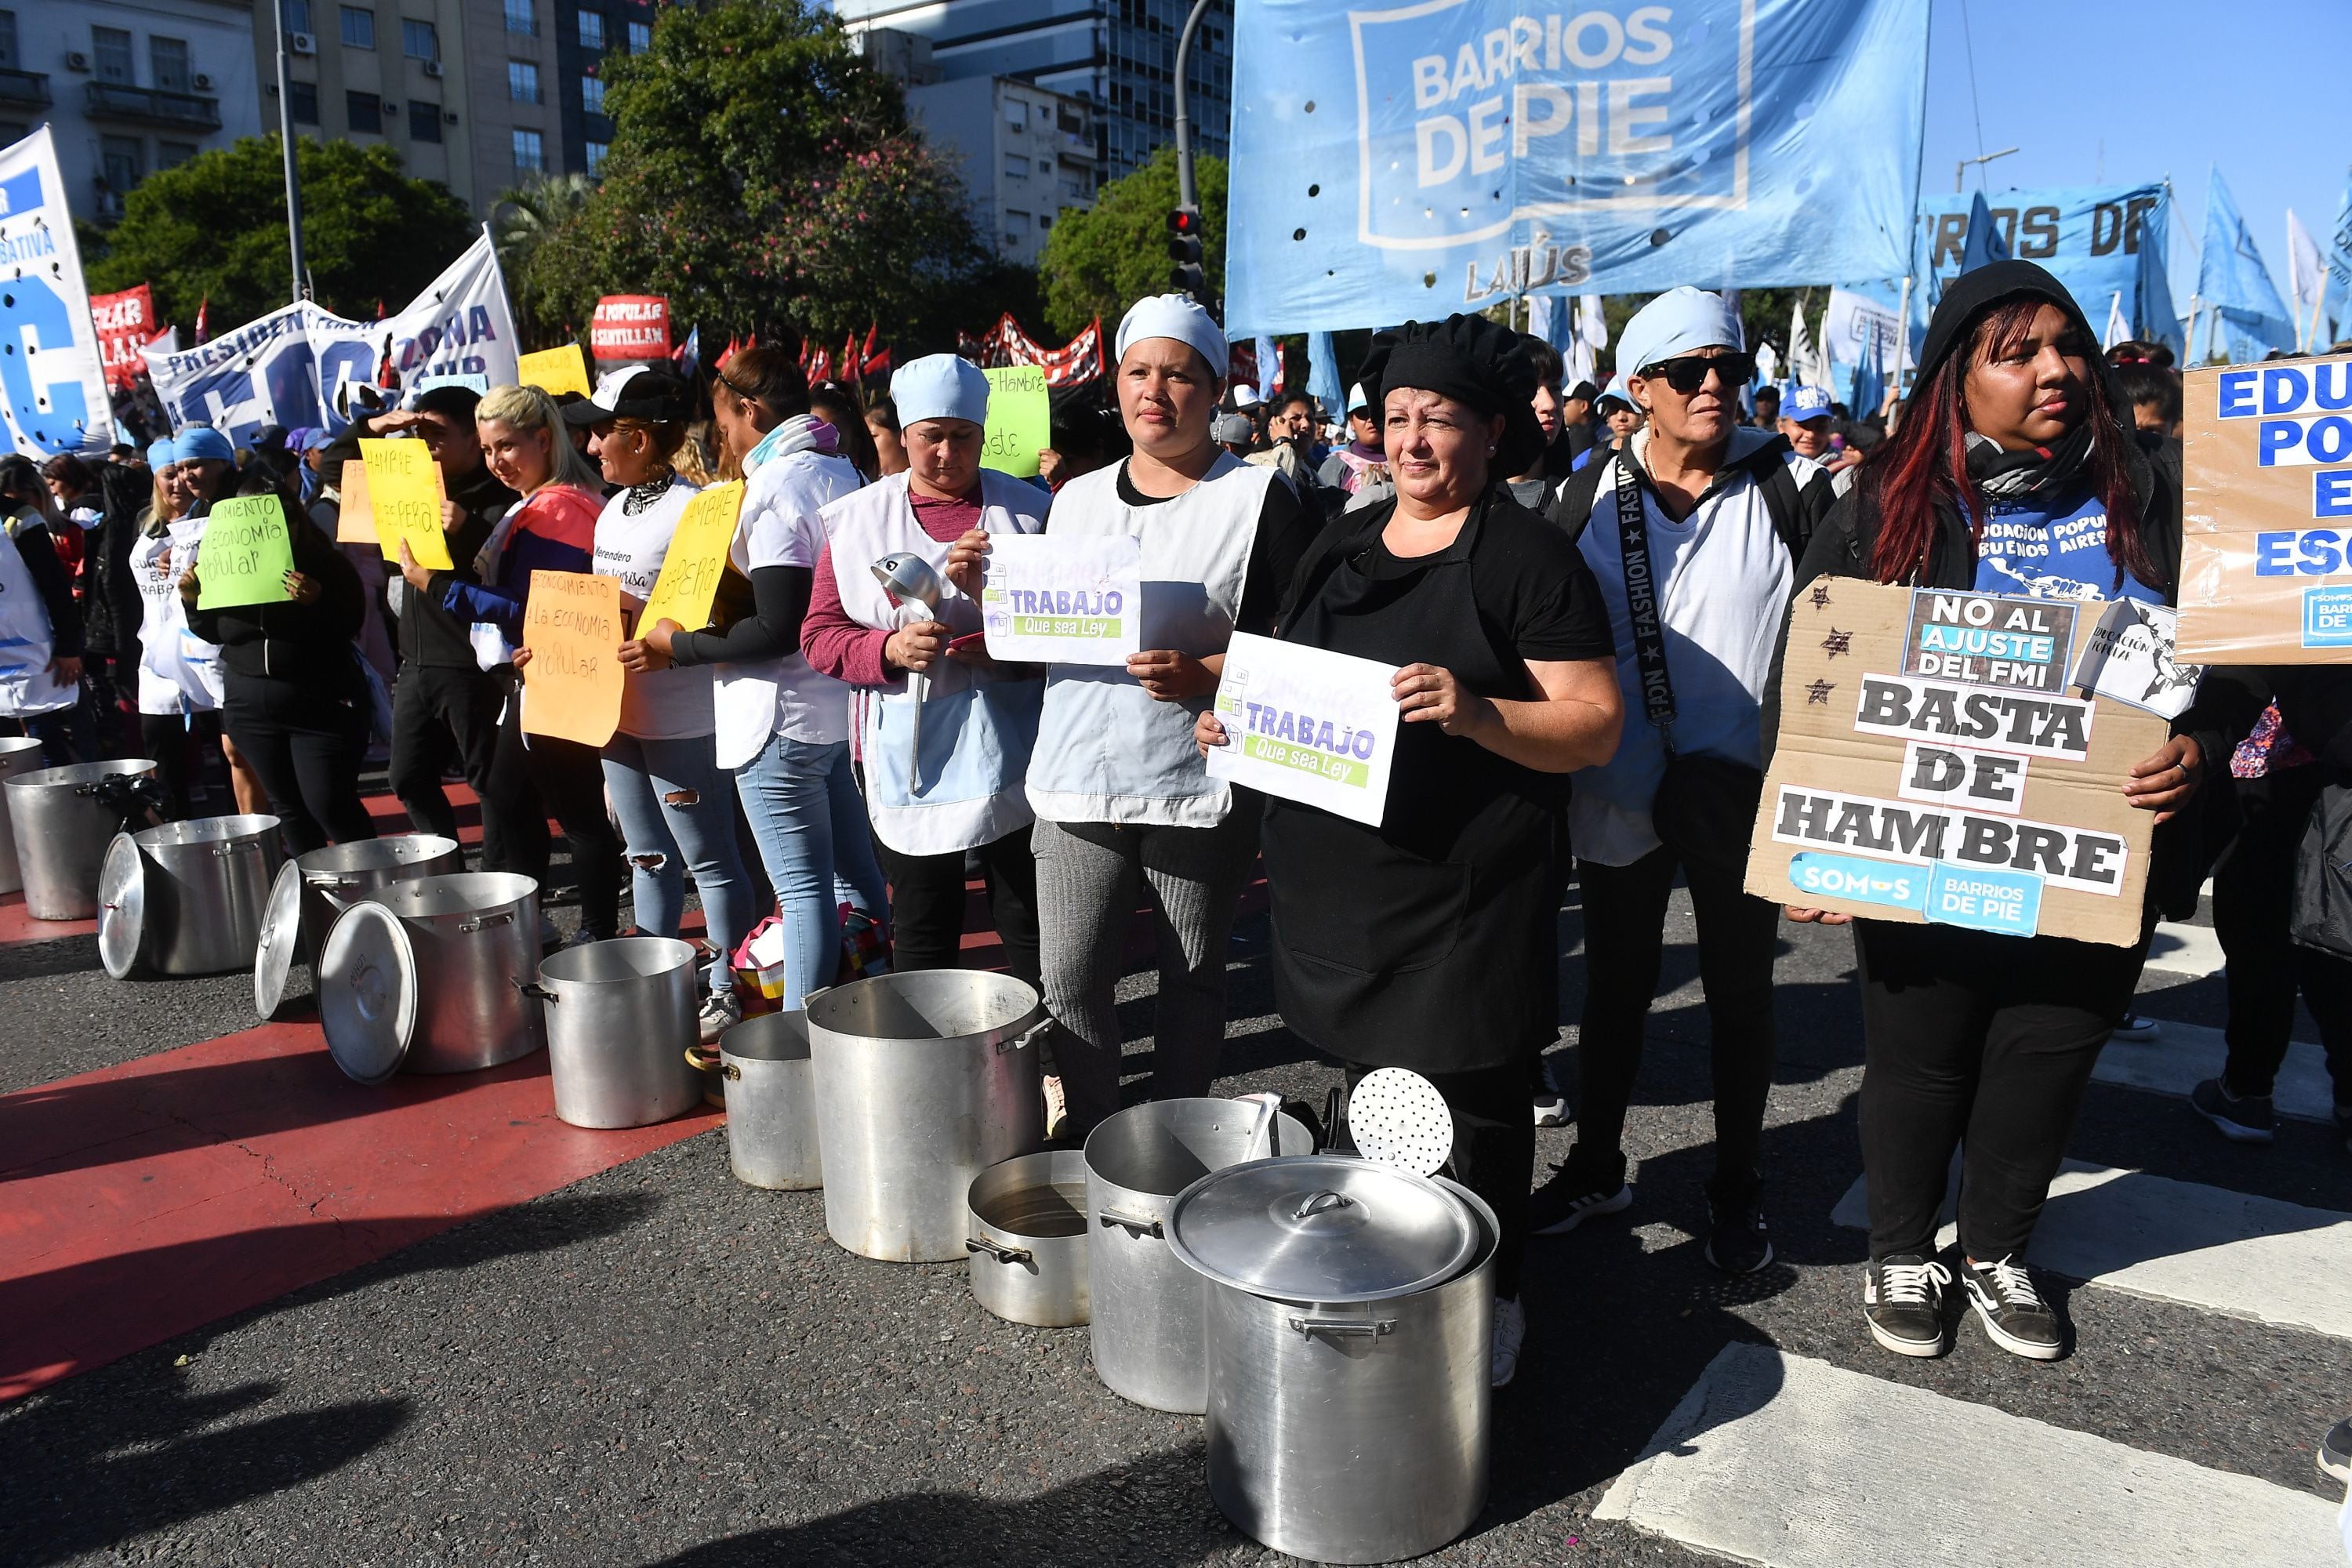 Prision Piquetera marcha ministerio desarrollo movimientos sociales polo obrero